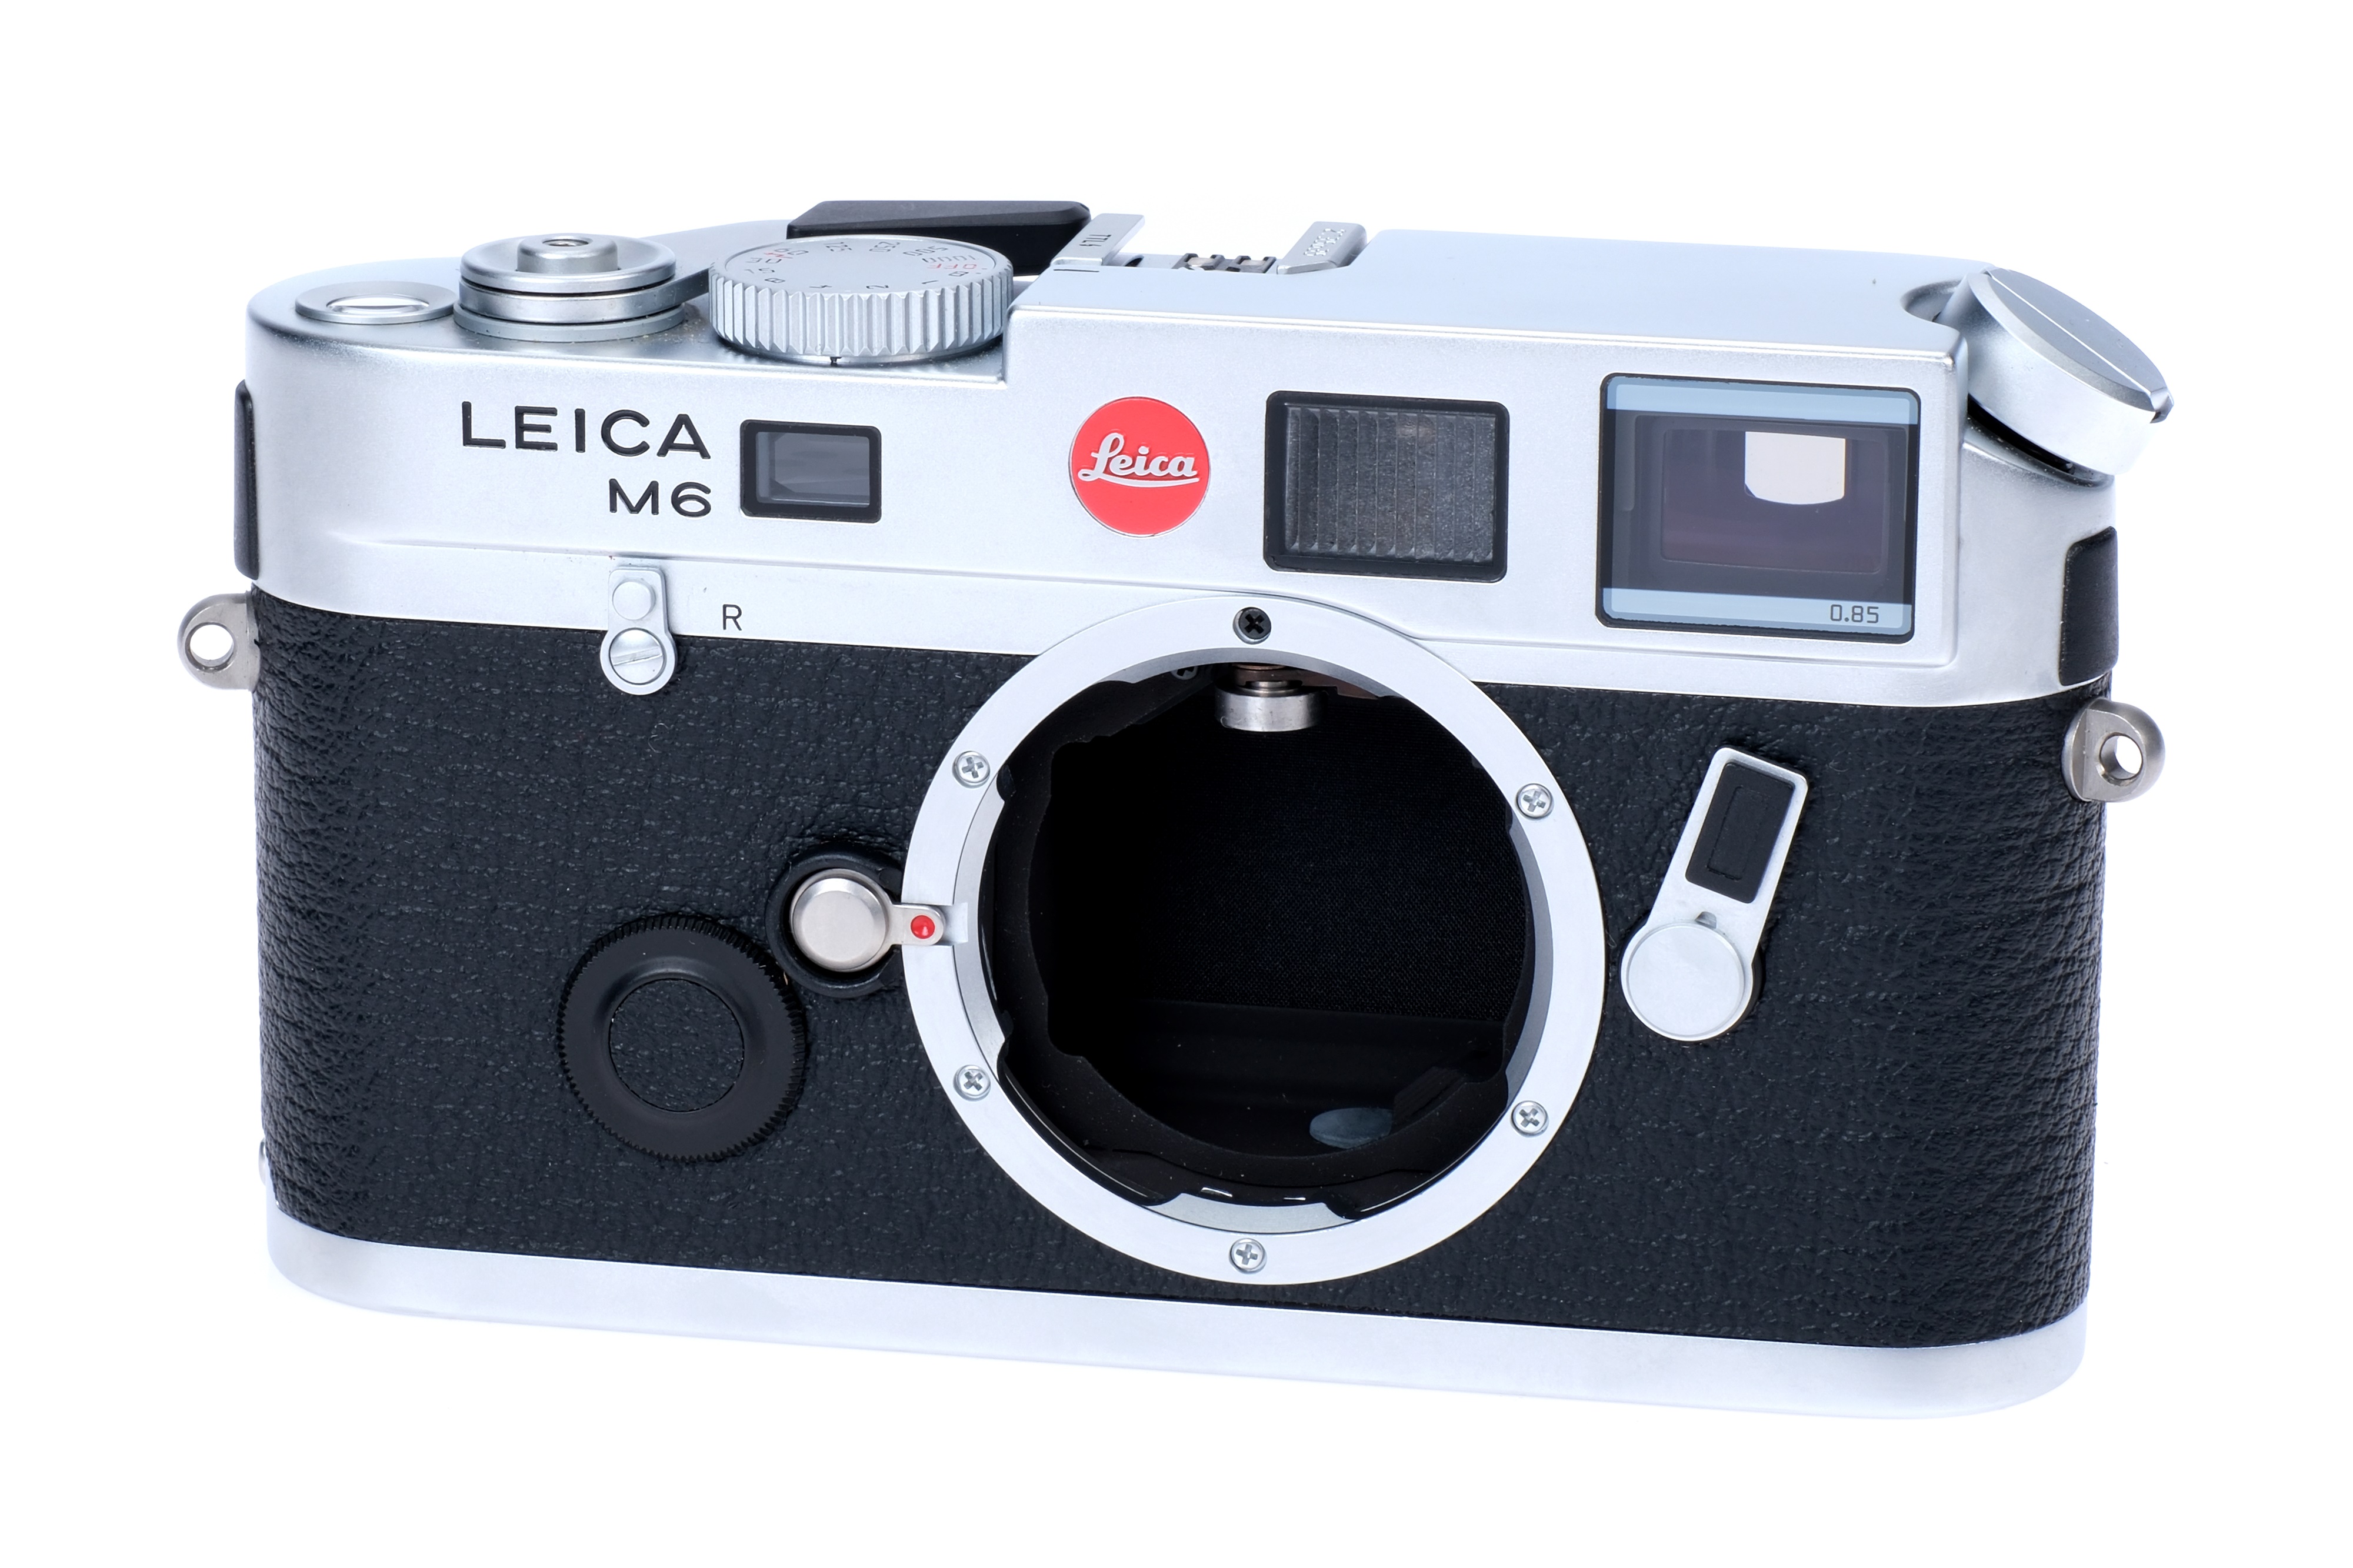 A Leica M6 0.85 TTL Rangefinder Camera Body,